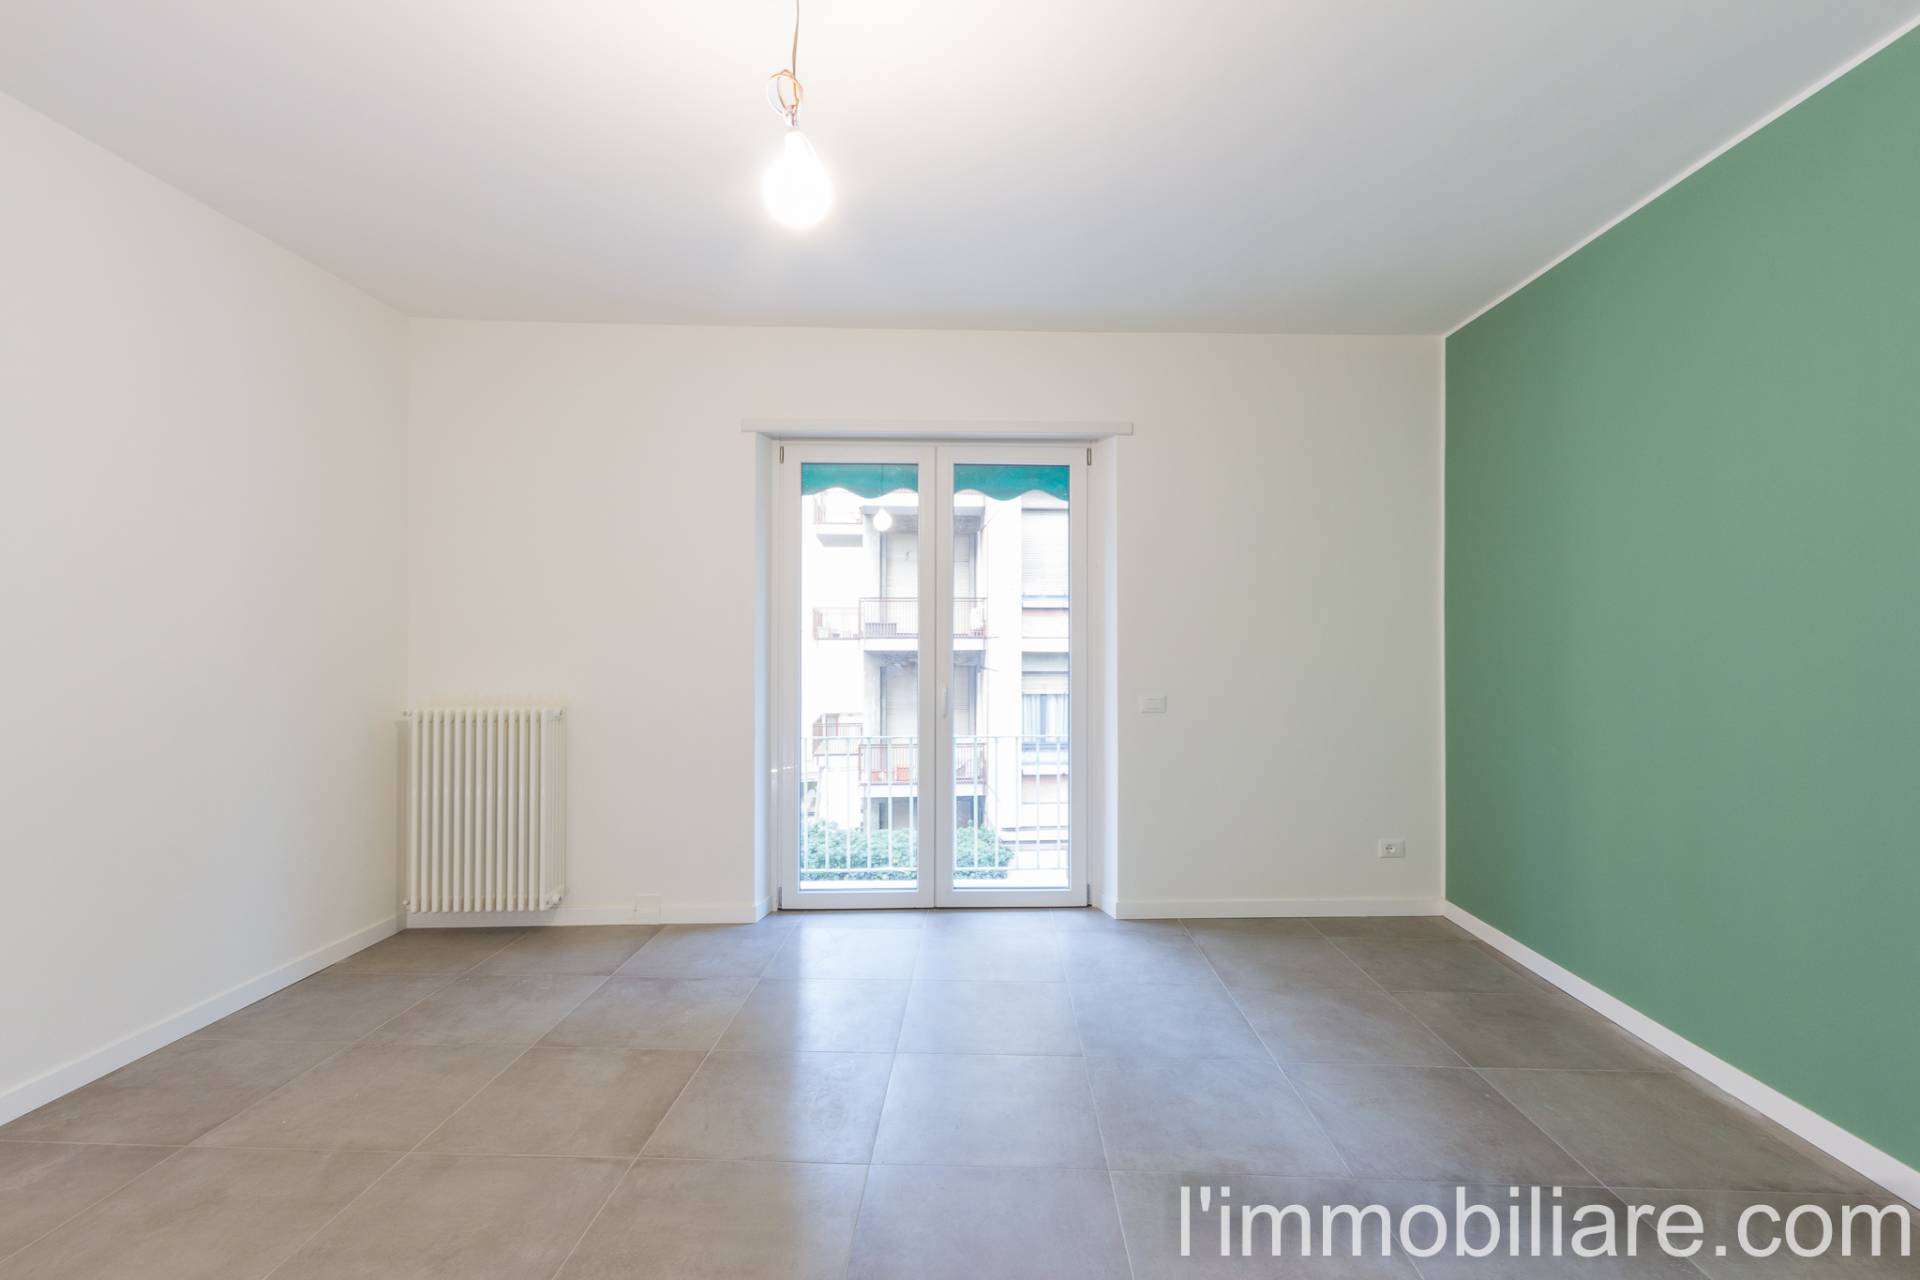 Appartamento in Vendita a Verona: 3 locali, 85 mq - Foto 3